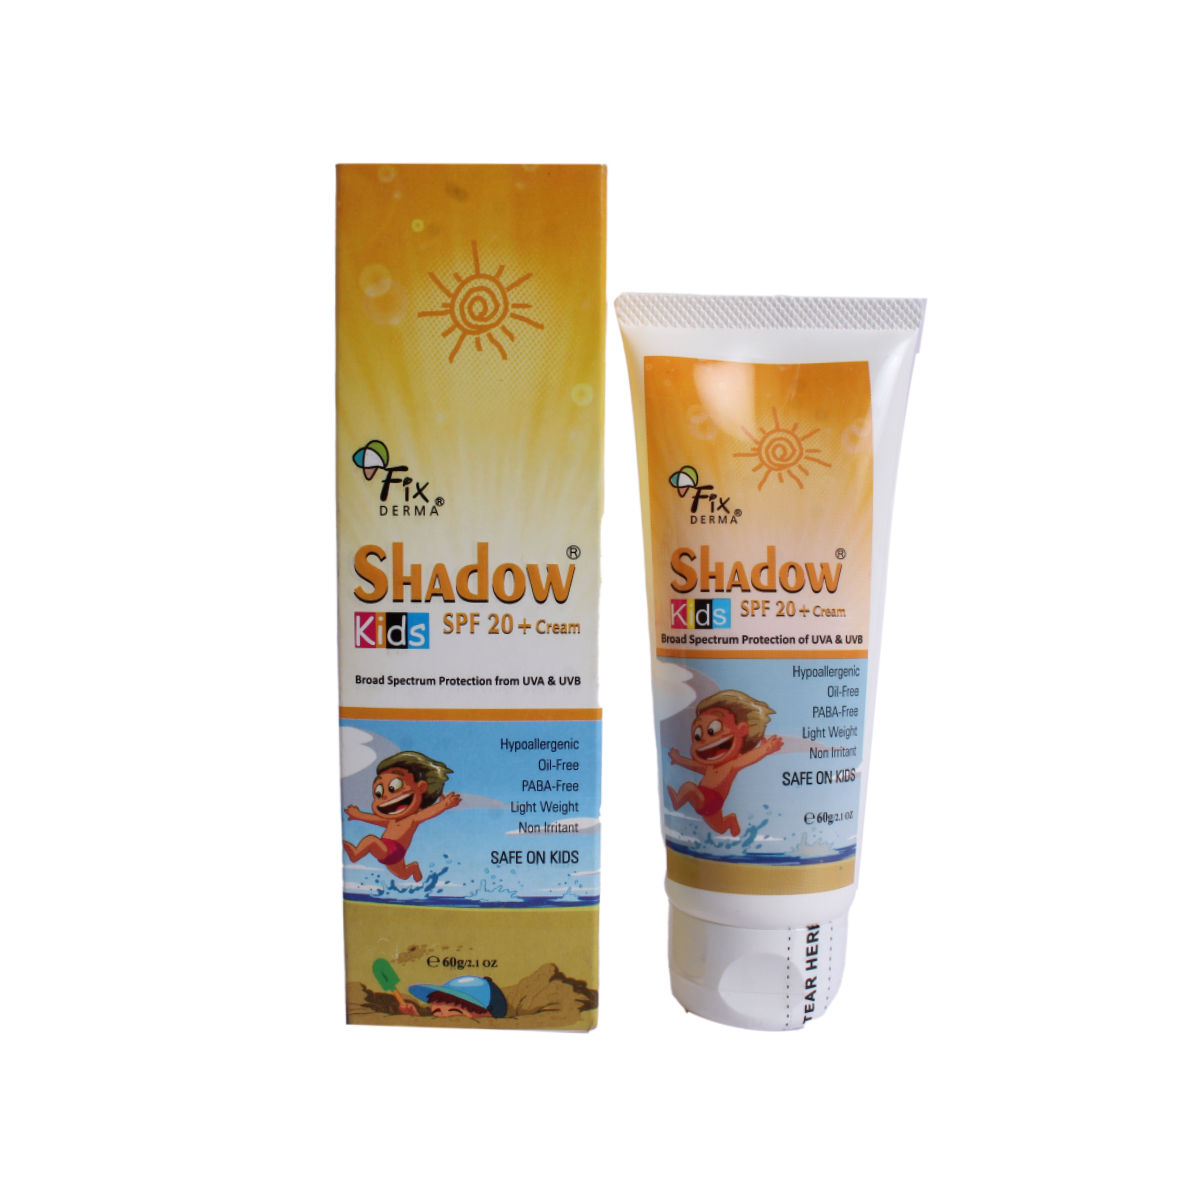 Buy Fix Derma Shadow Kids Spf 20+ Cream 60gm Online